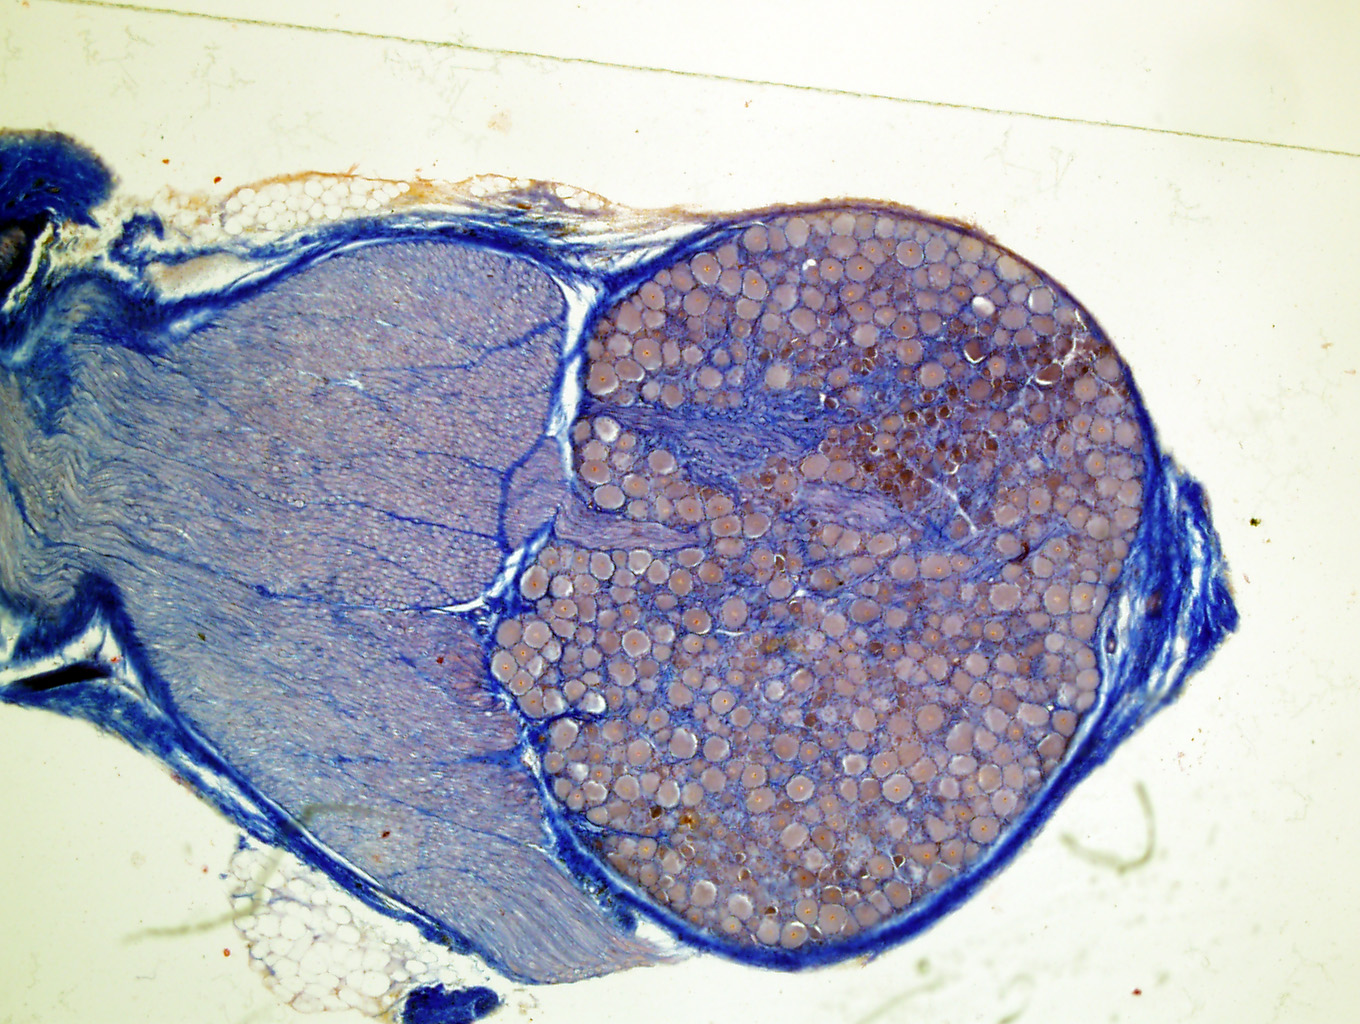 19) Bilden ovan visar ett sympatiskt ganglion med en grupp stora cellkroppar till höger och nervfibrer till vänster i bilden.